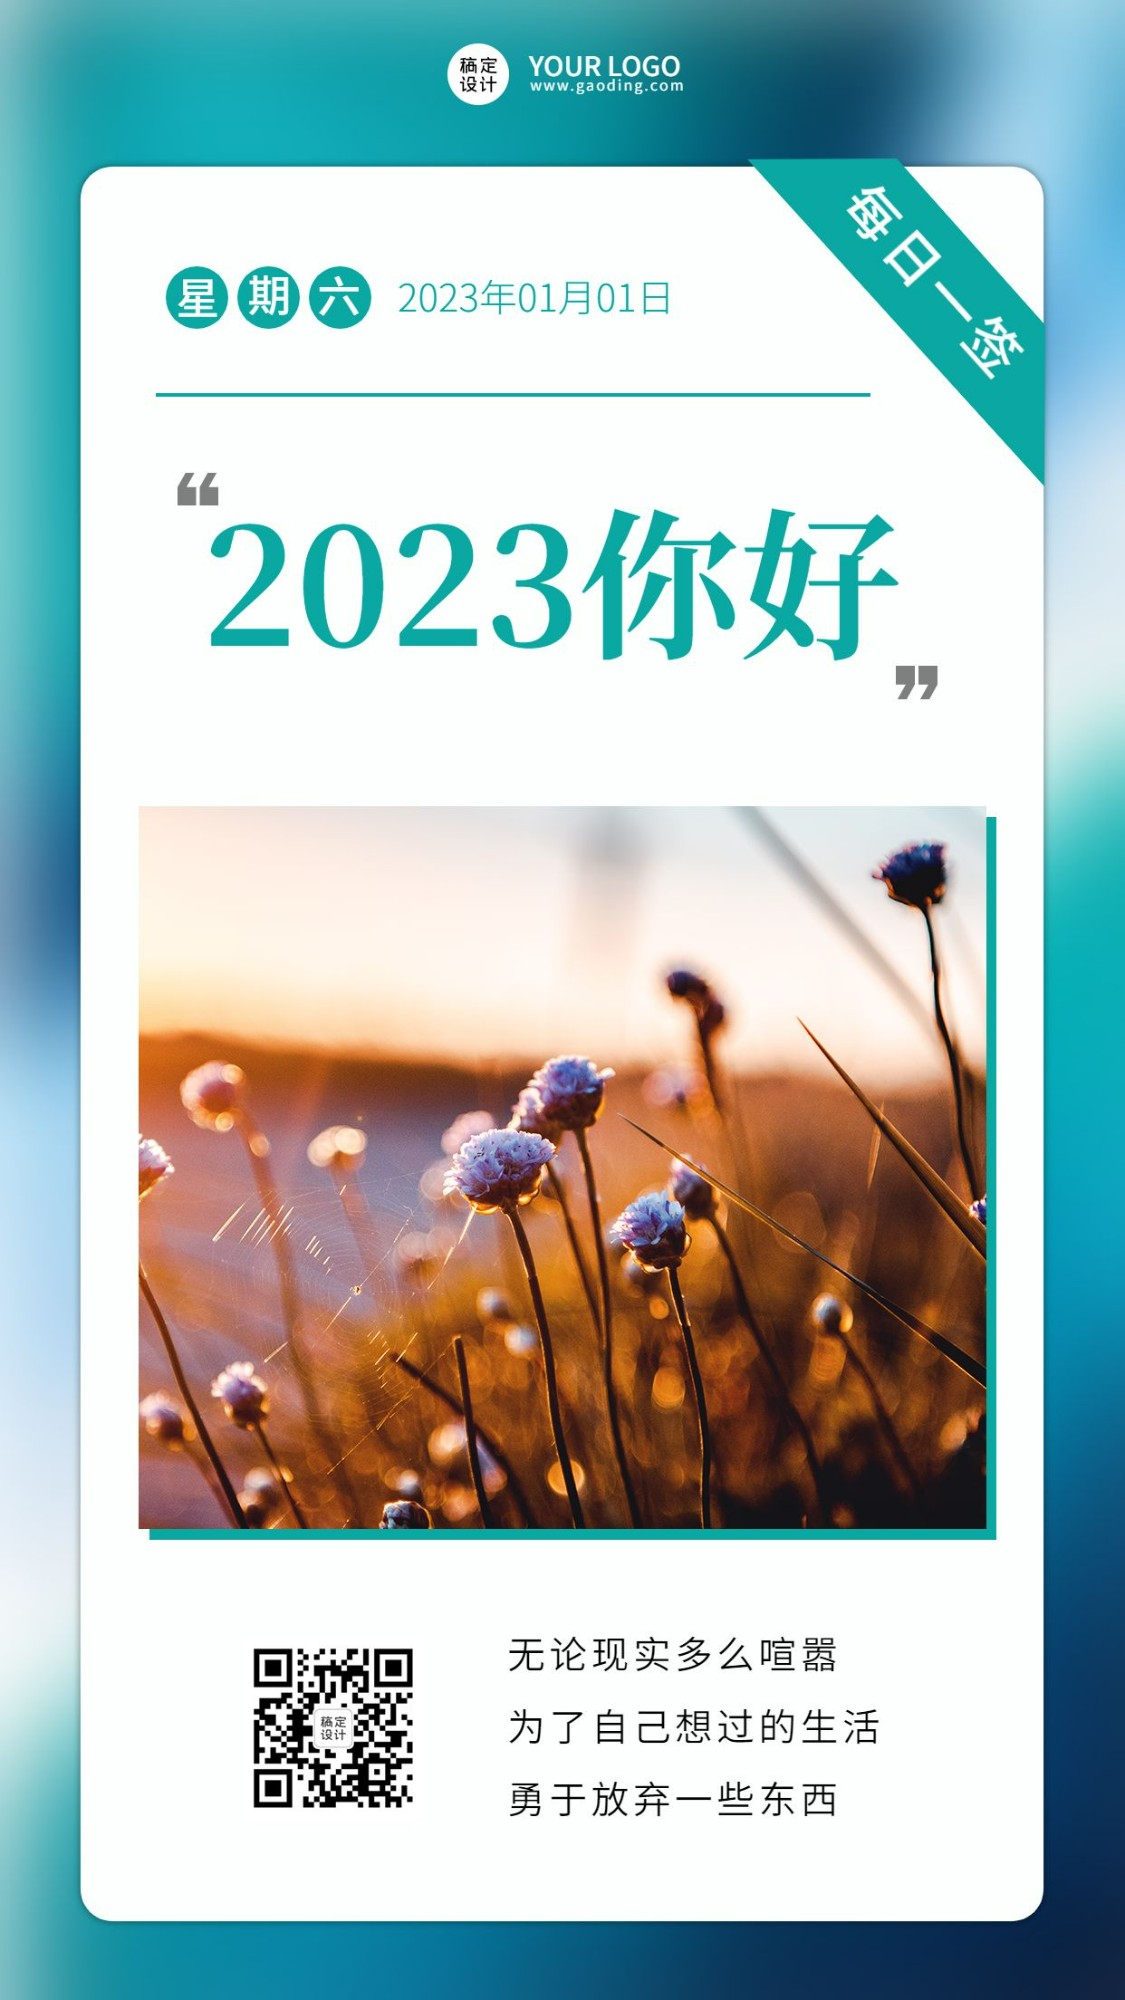 2022问候励志语录套系手机海报预览效果